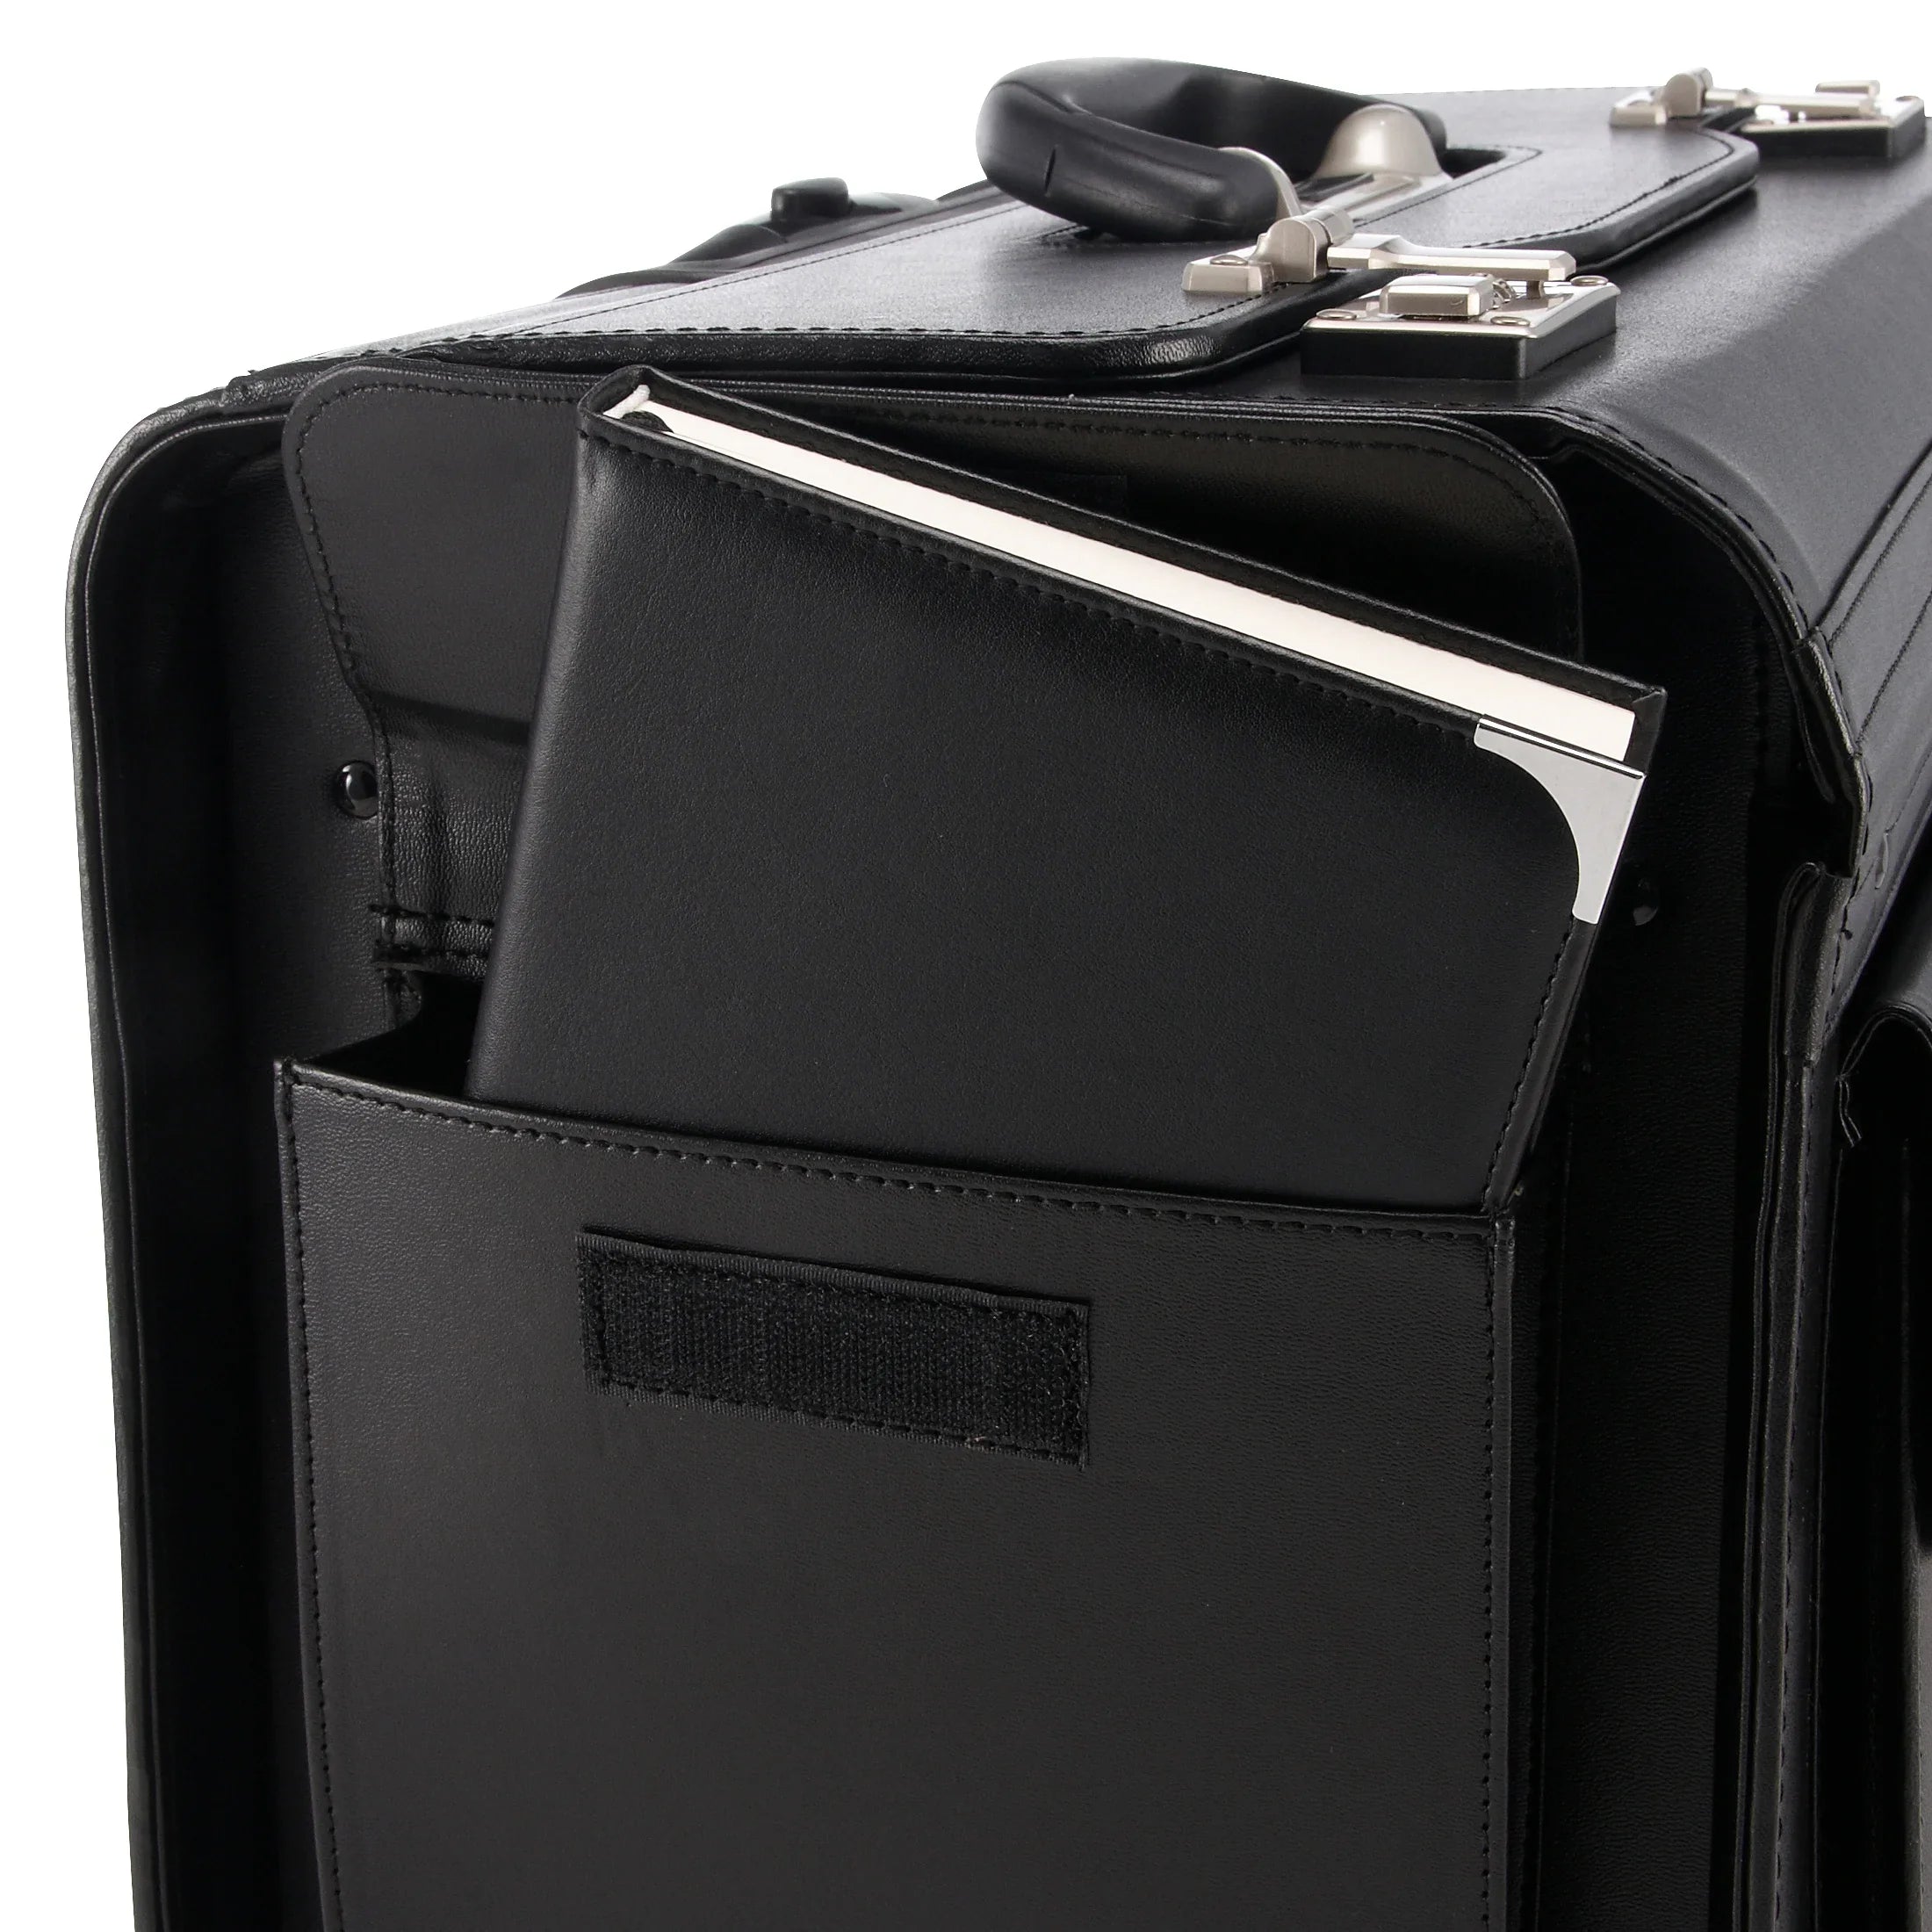 Dermata Business pilot case on wheels XL 50 cm - black